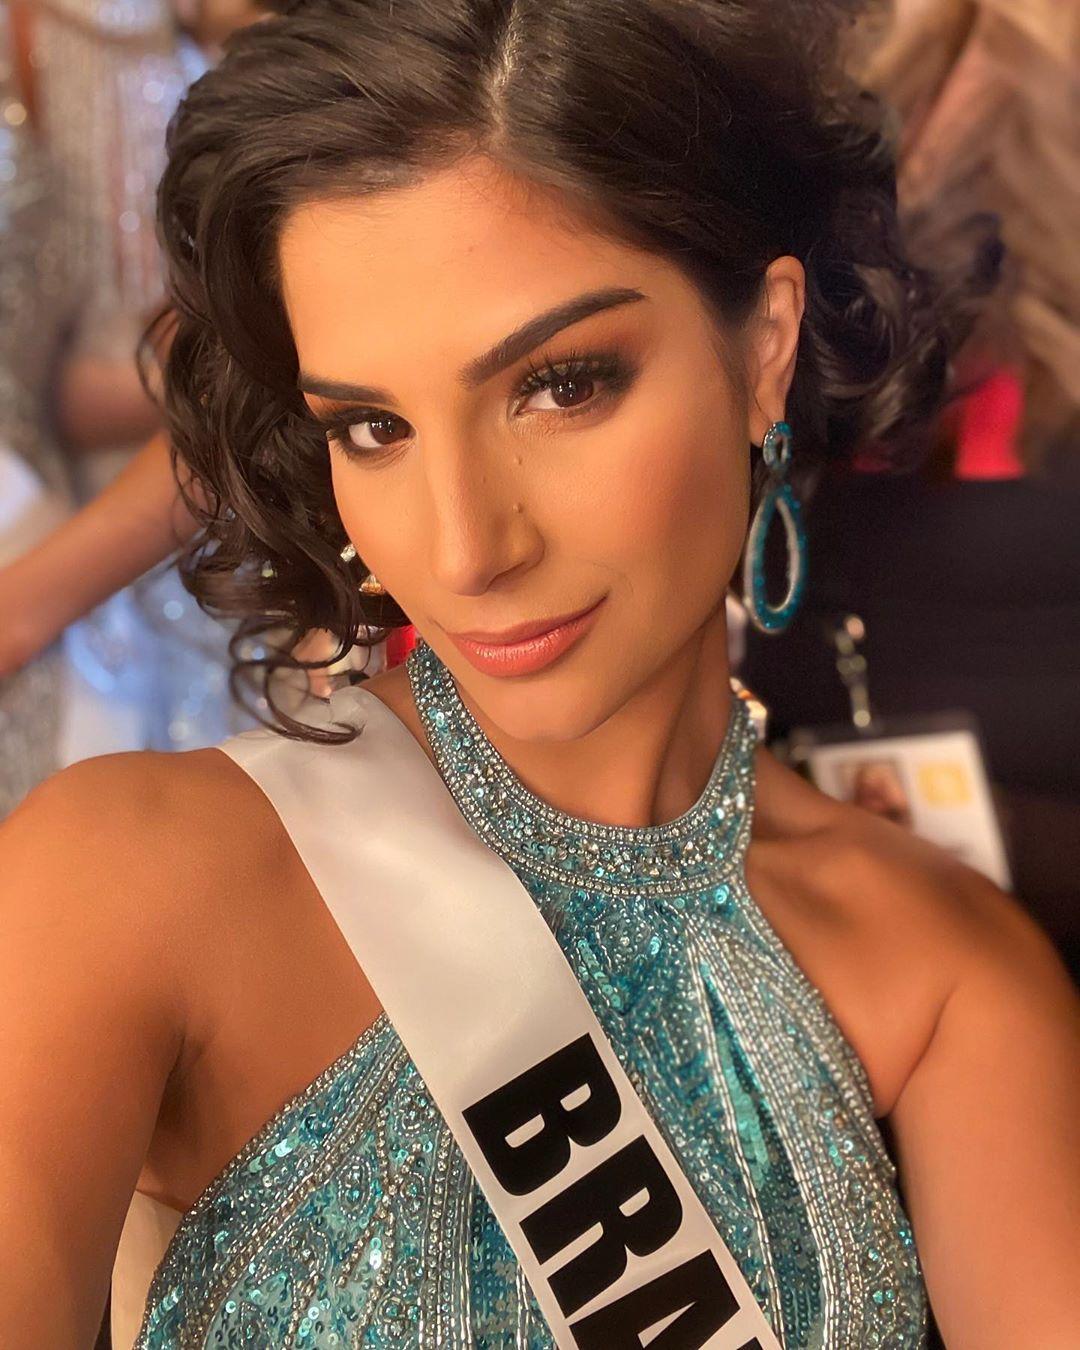 Julia Horta representa o Brasil no Miss Universo 2019 (Foto: Reprodução/Instagram)
